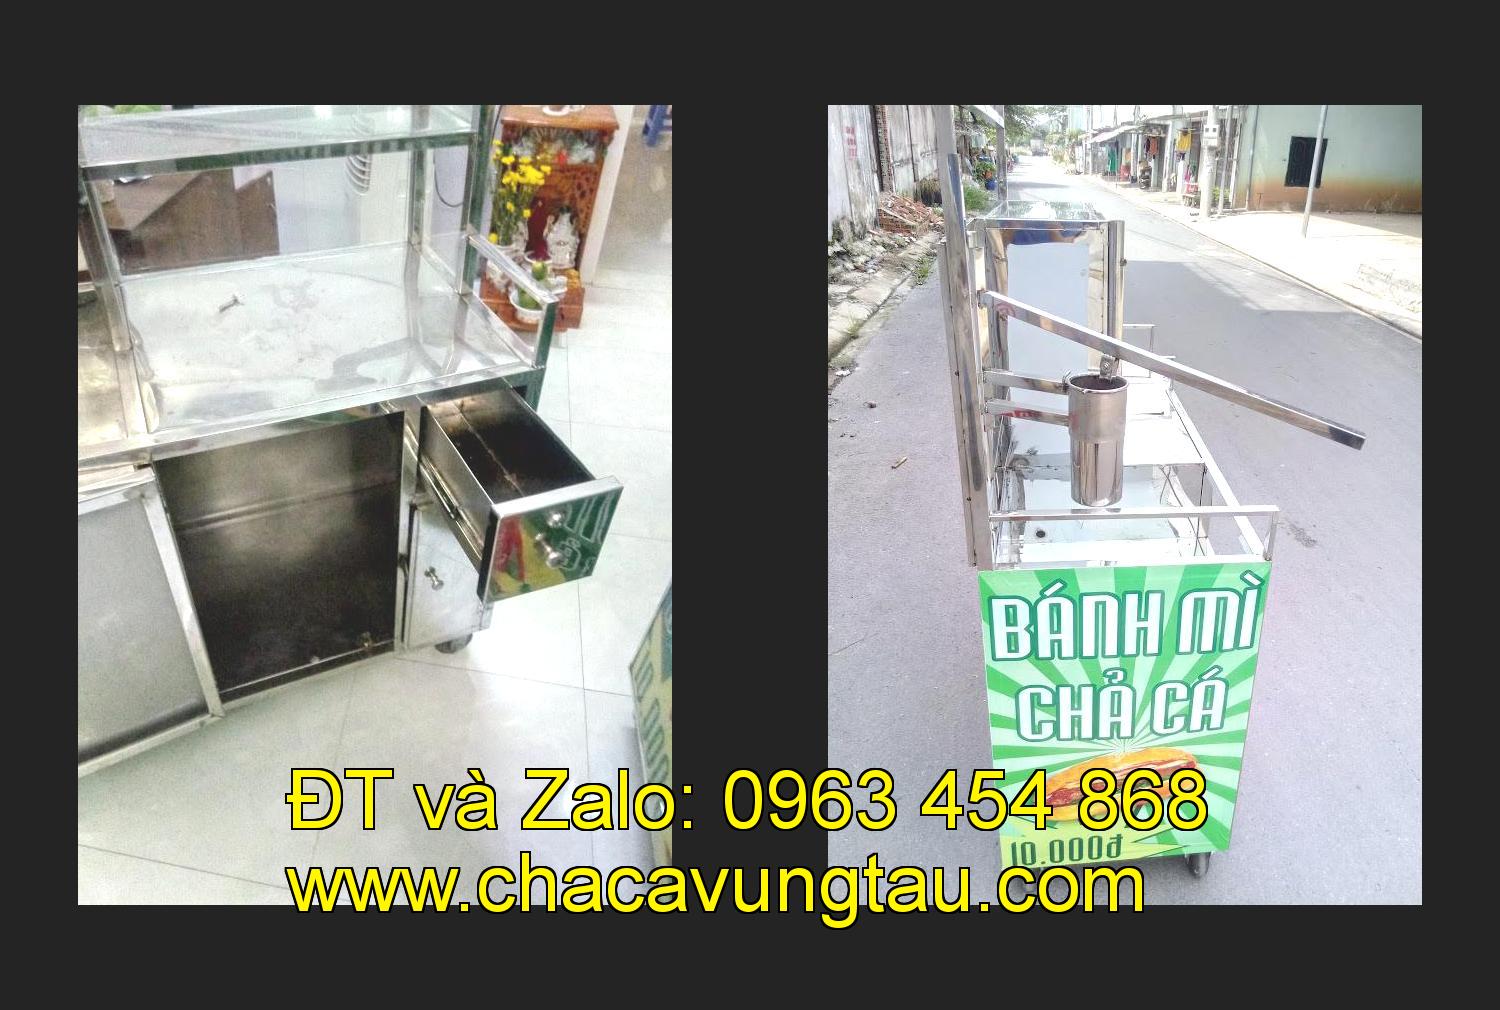 Bán xe bánh mì chả cá tại tỉnh Phú Yên